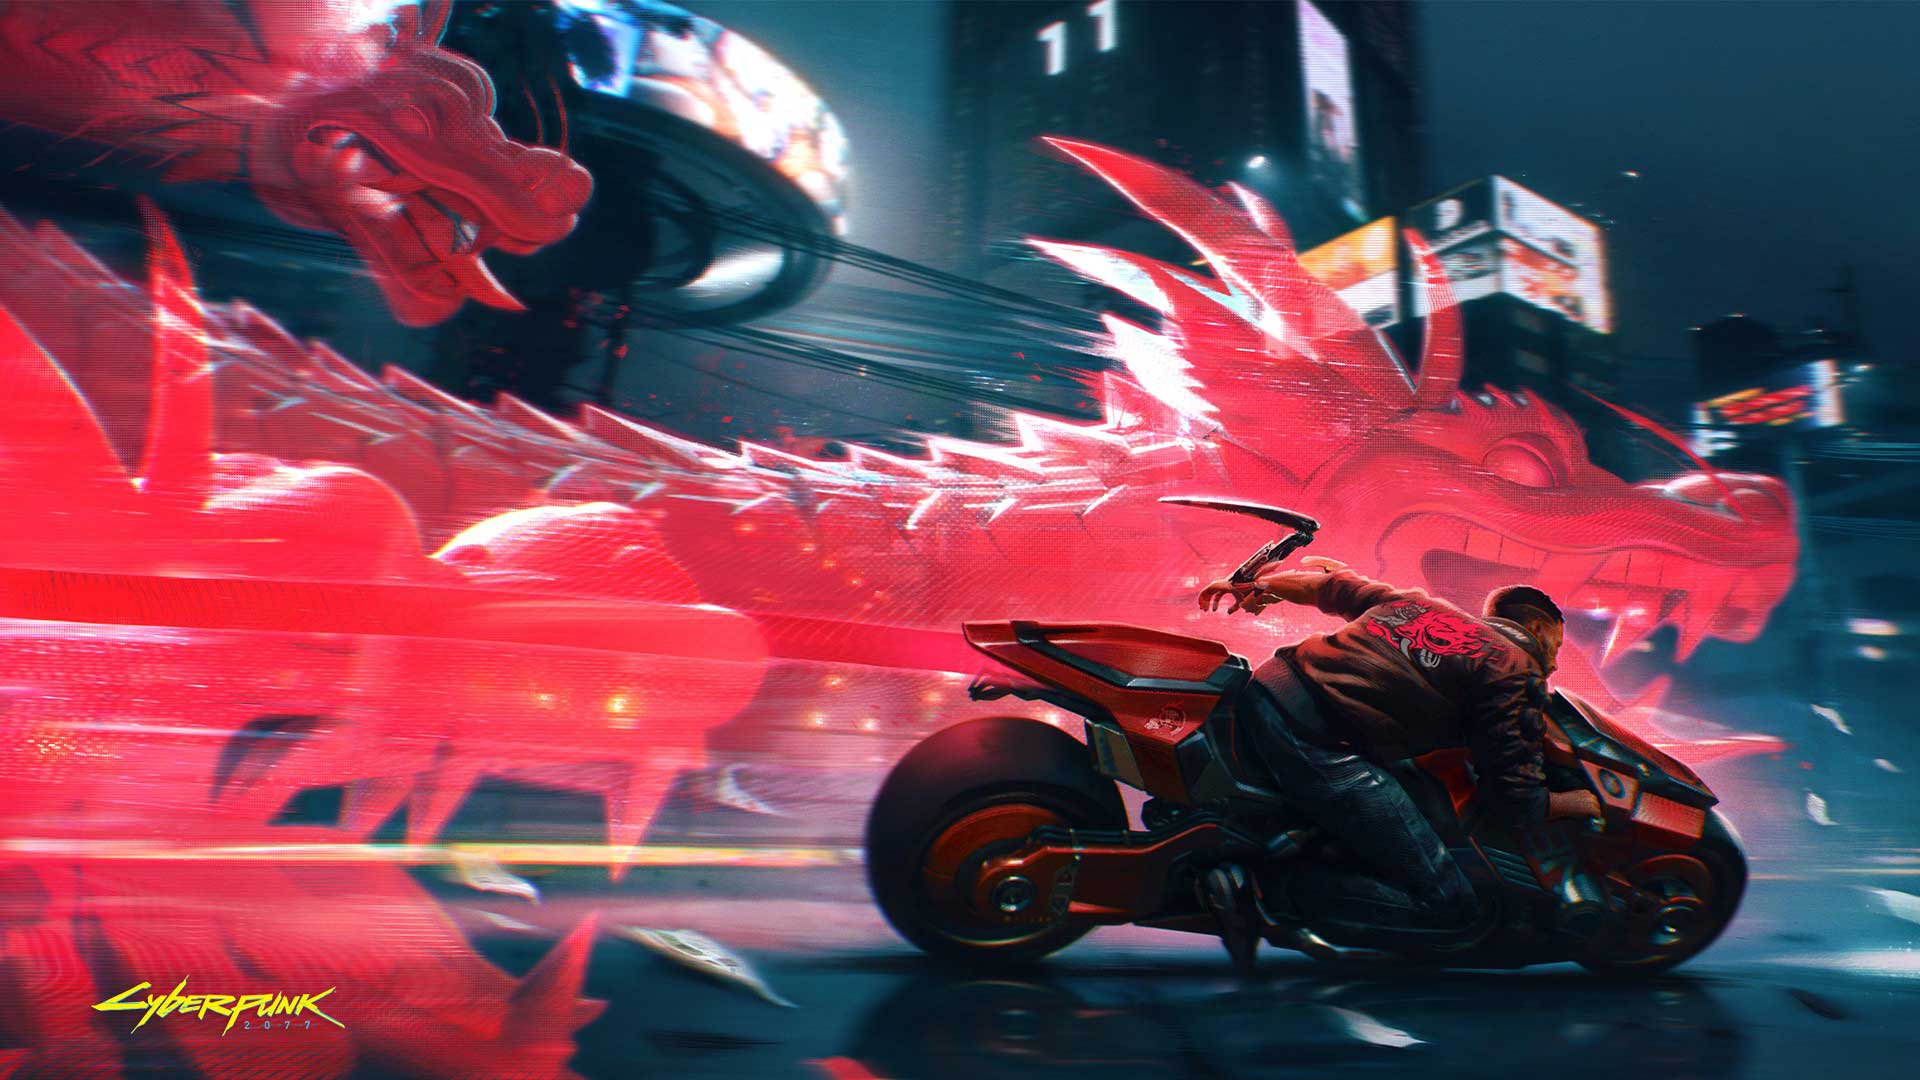 حرکت پرسرعت موتور در تصویر هنری بازی Cyberpunk 2077 شرکت سی دی پراجکت